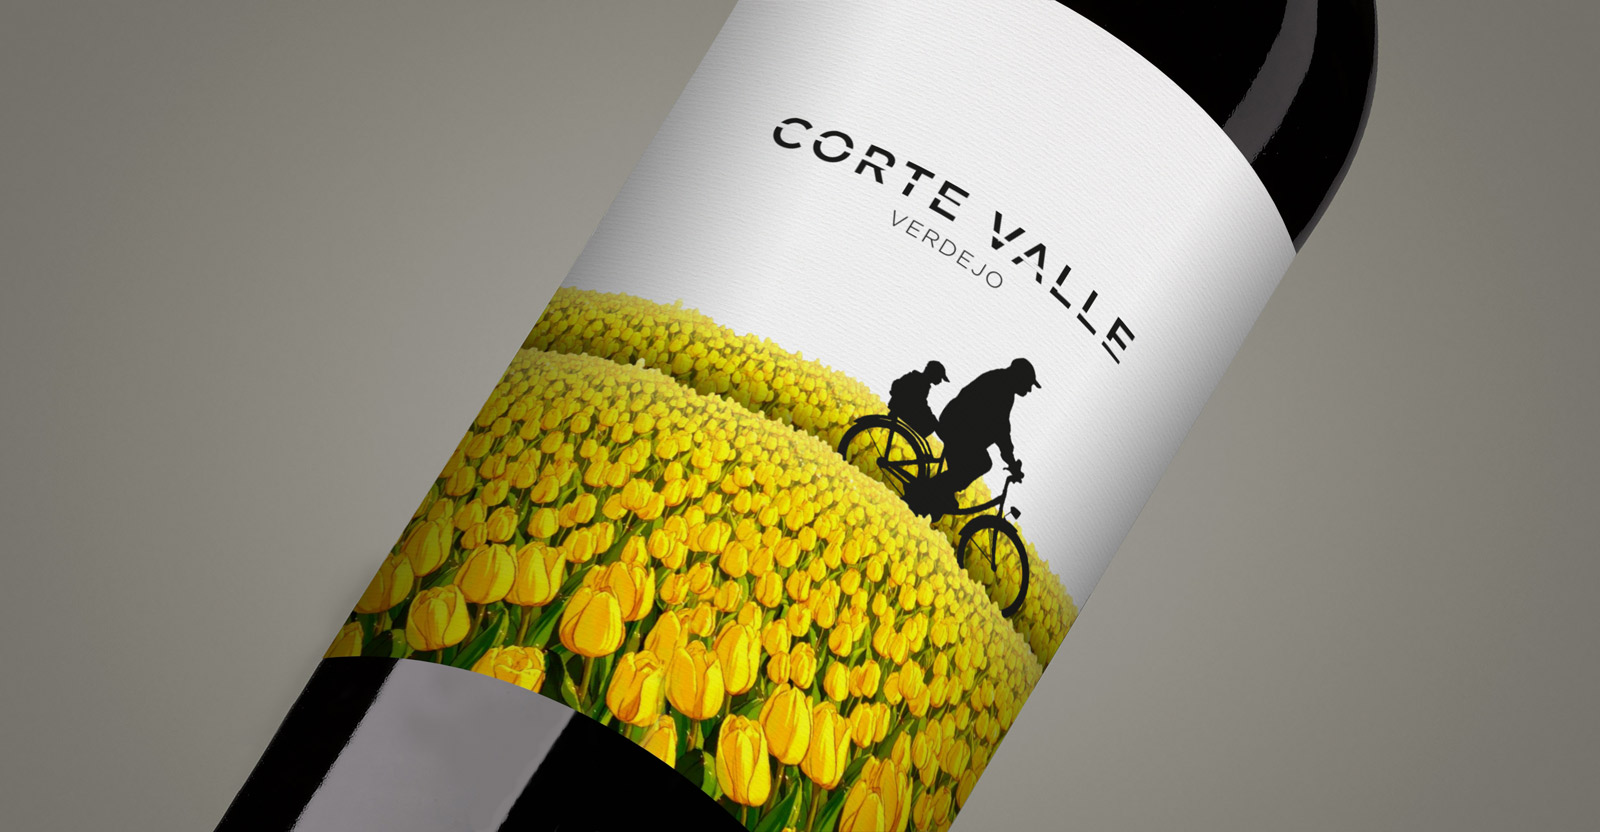 Diseño gráfico y creativo de etiquetas formato sleeve y packaging de vino para CORTEVALLE